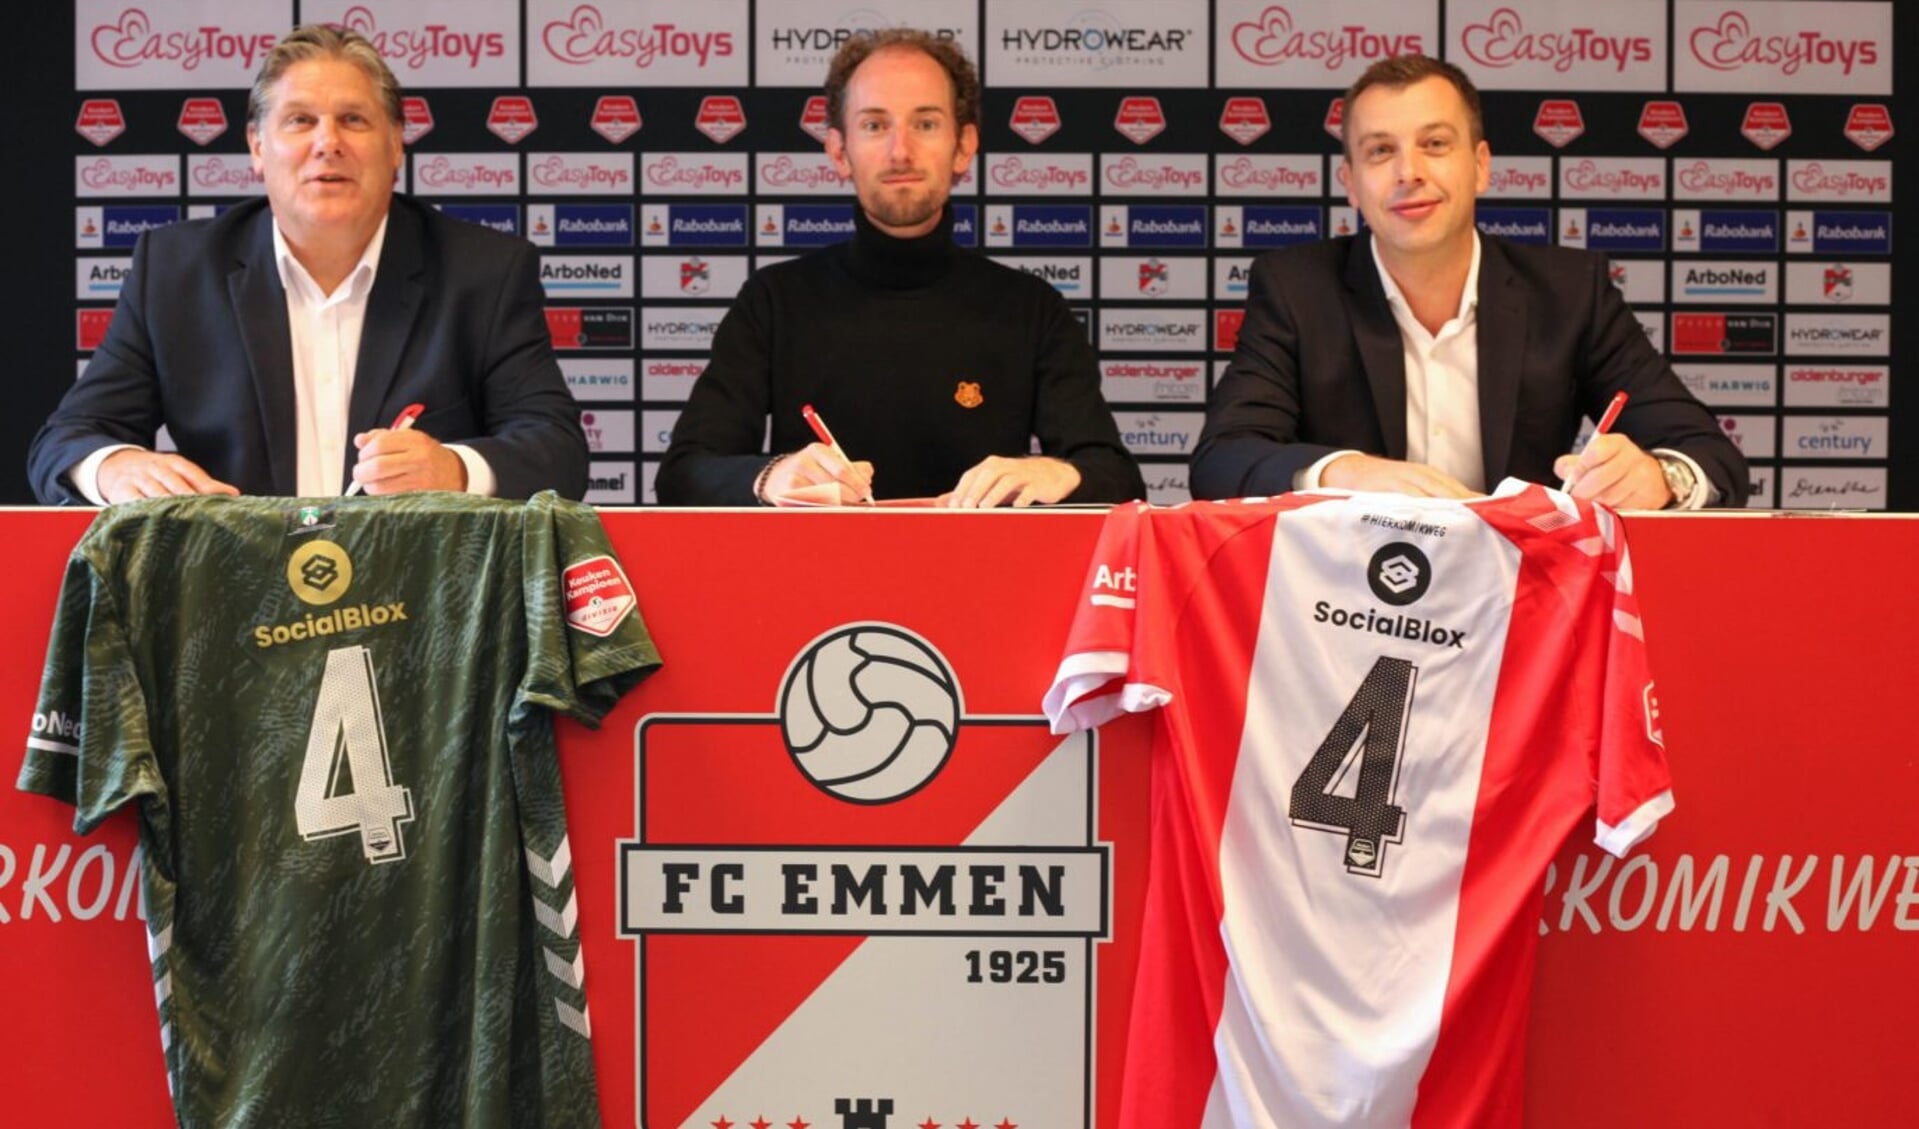 De handtekeningen zijn gezet. SocialBlox staat de komende tijd op de rug van de shirts van FC Emmen. Foto: FC Emmen.